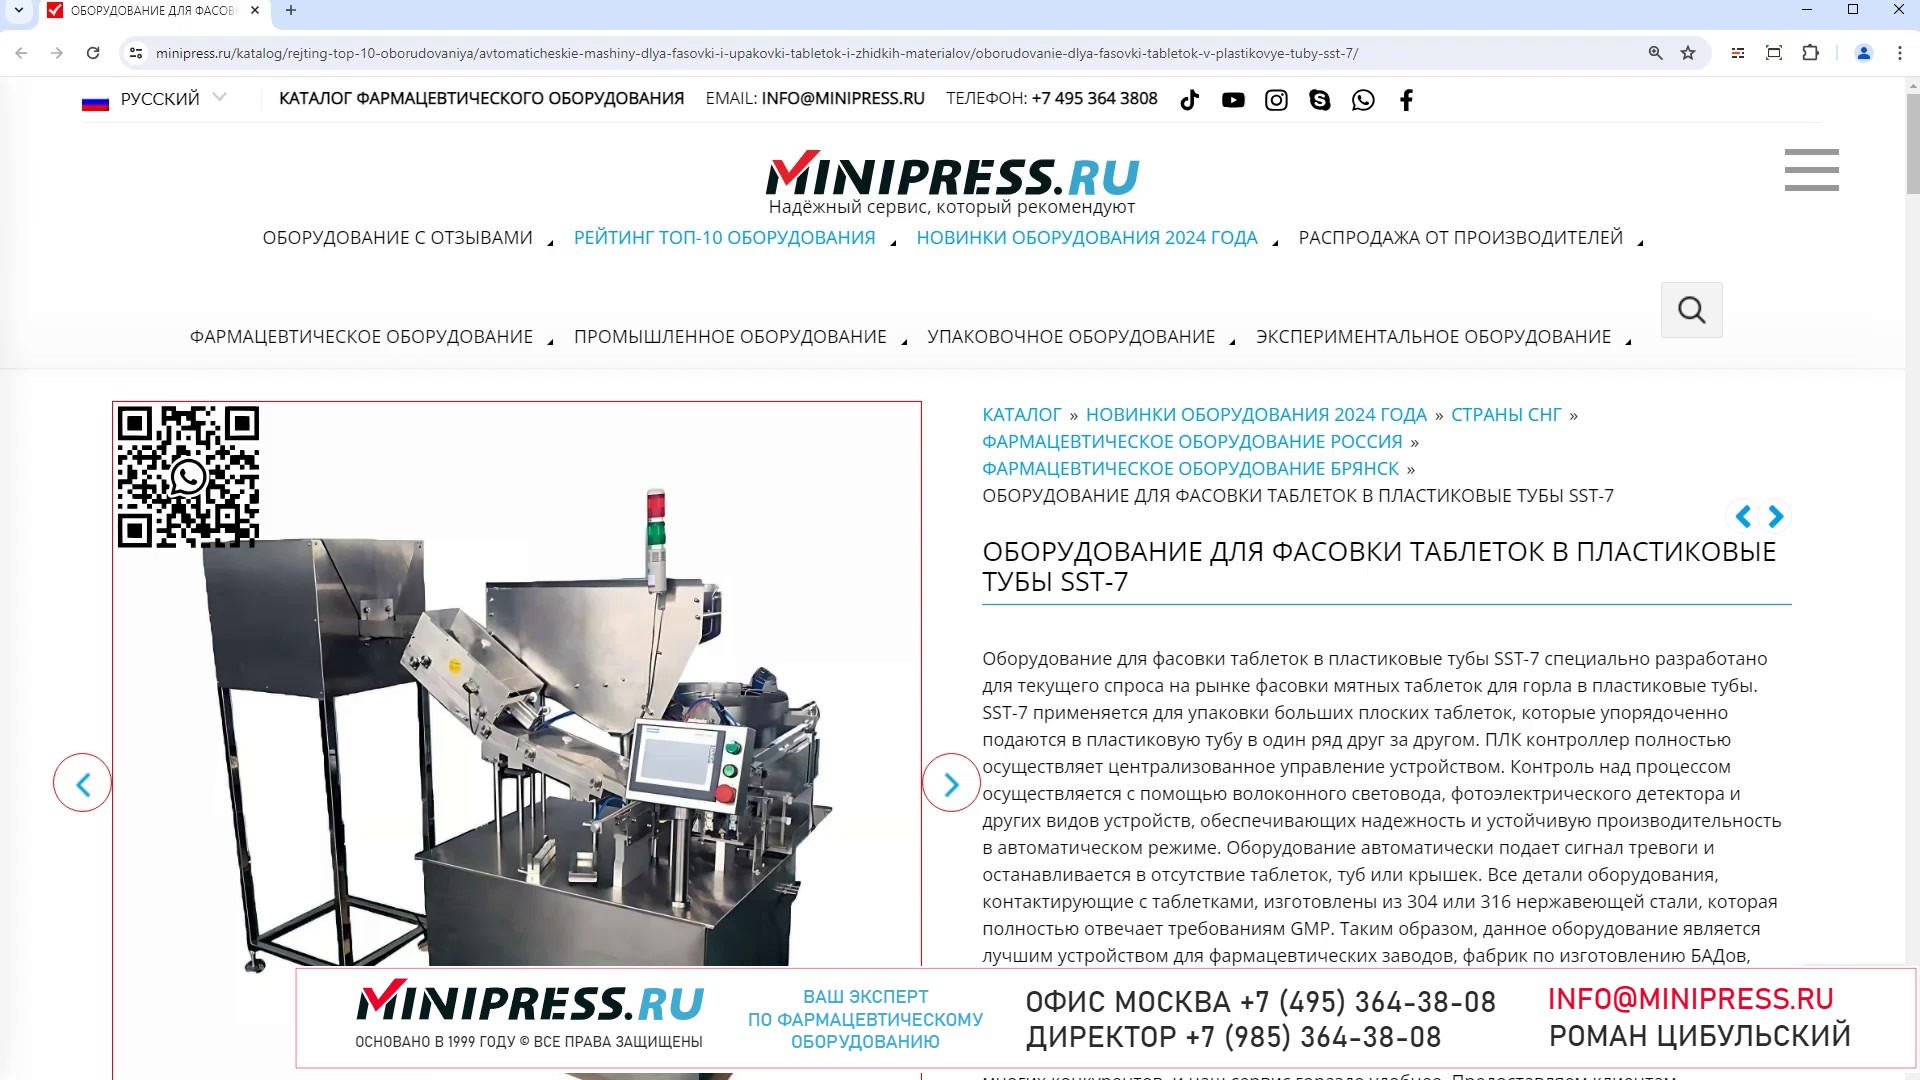 Minipress.ru Оборудование для фасовки таблеток в пластиковые тубы SST-7